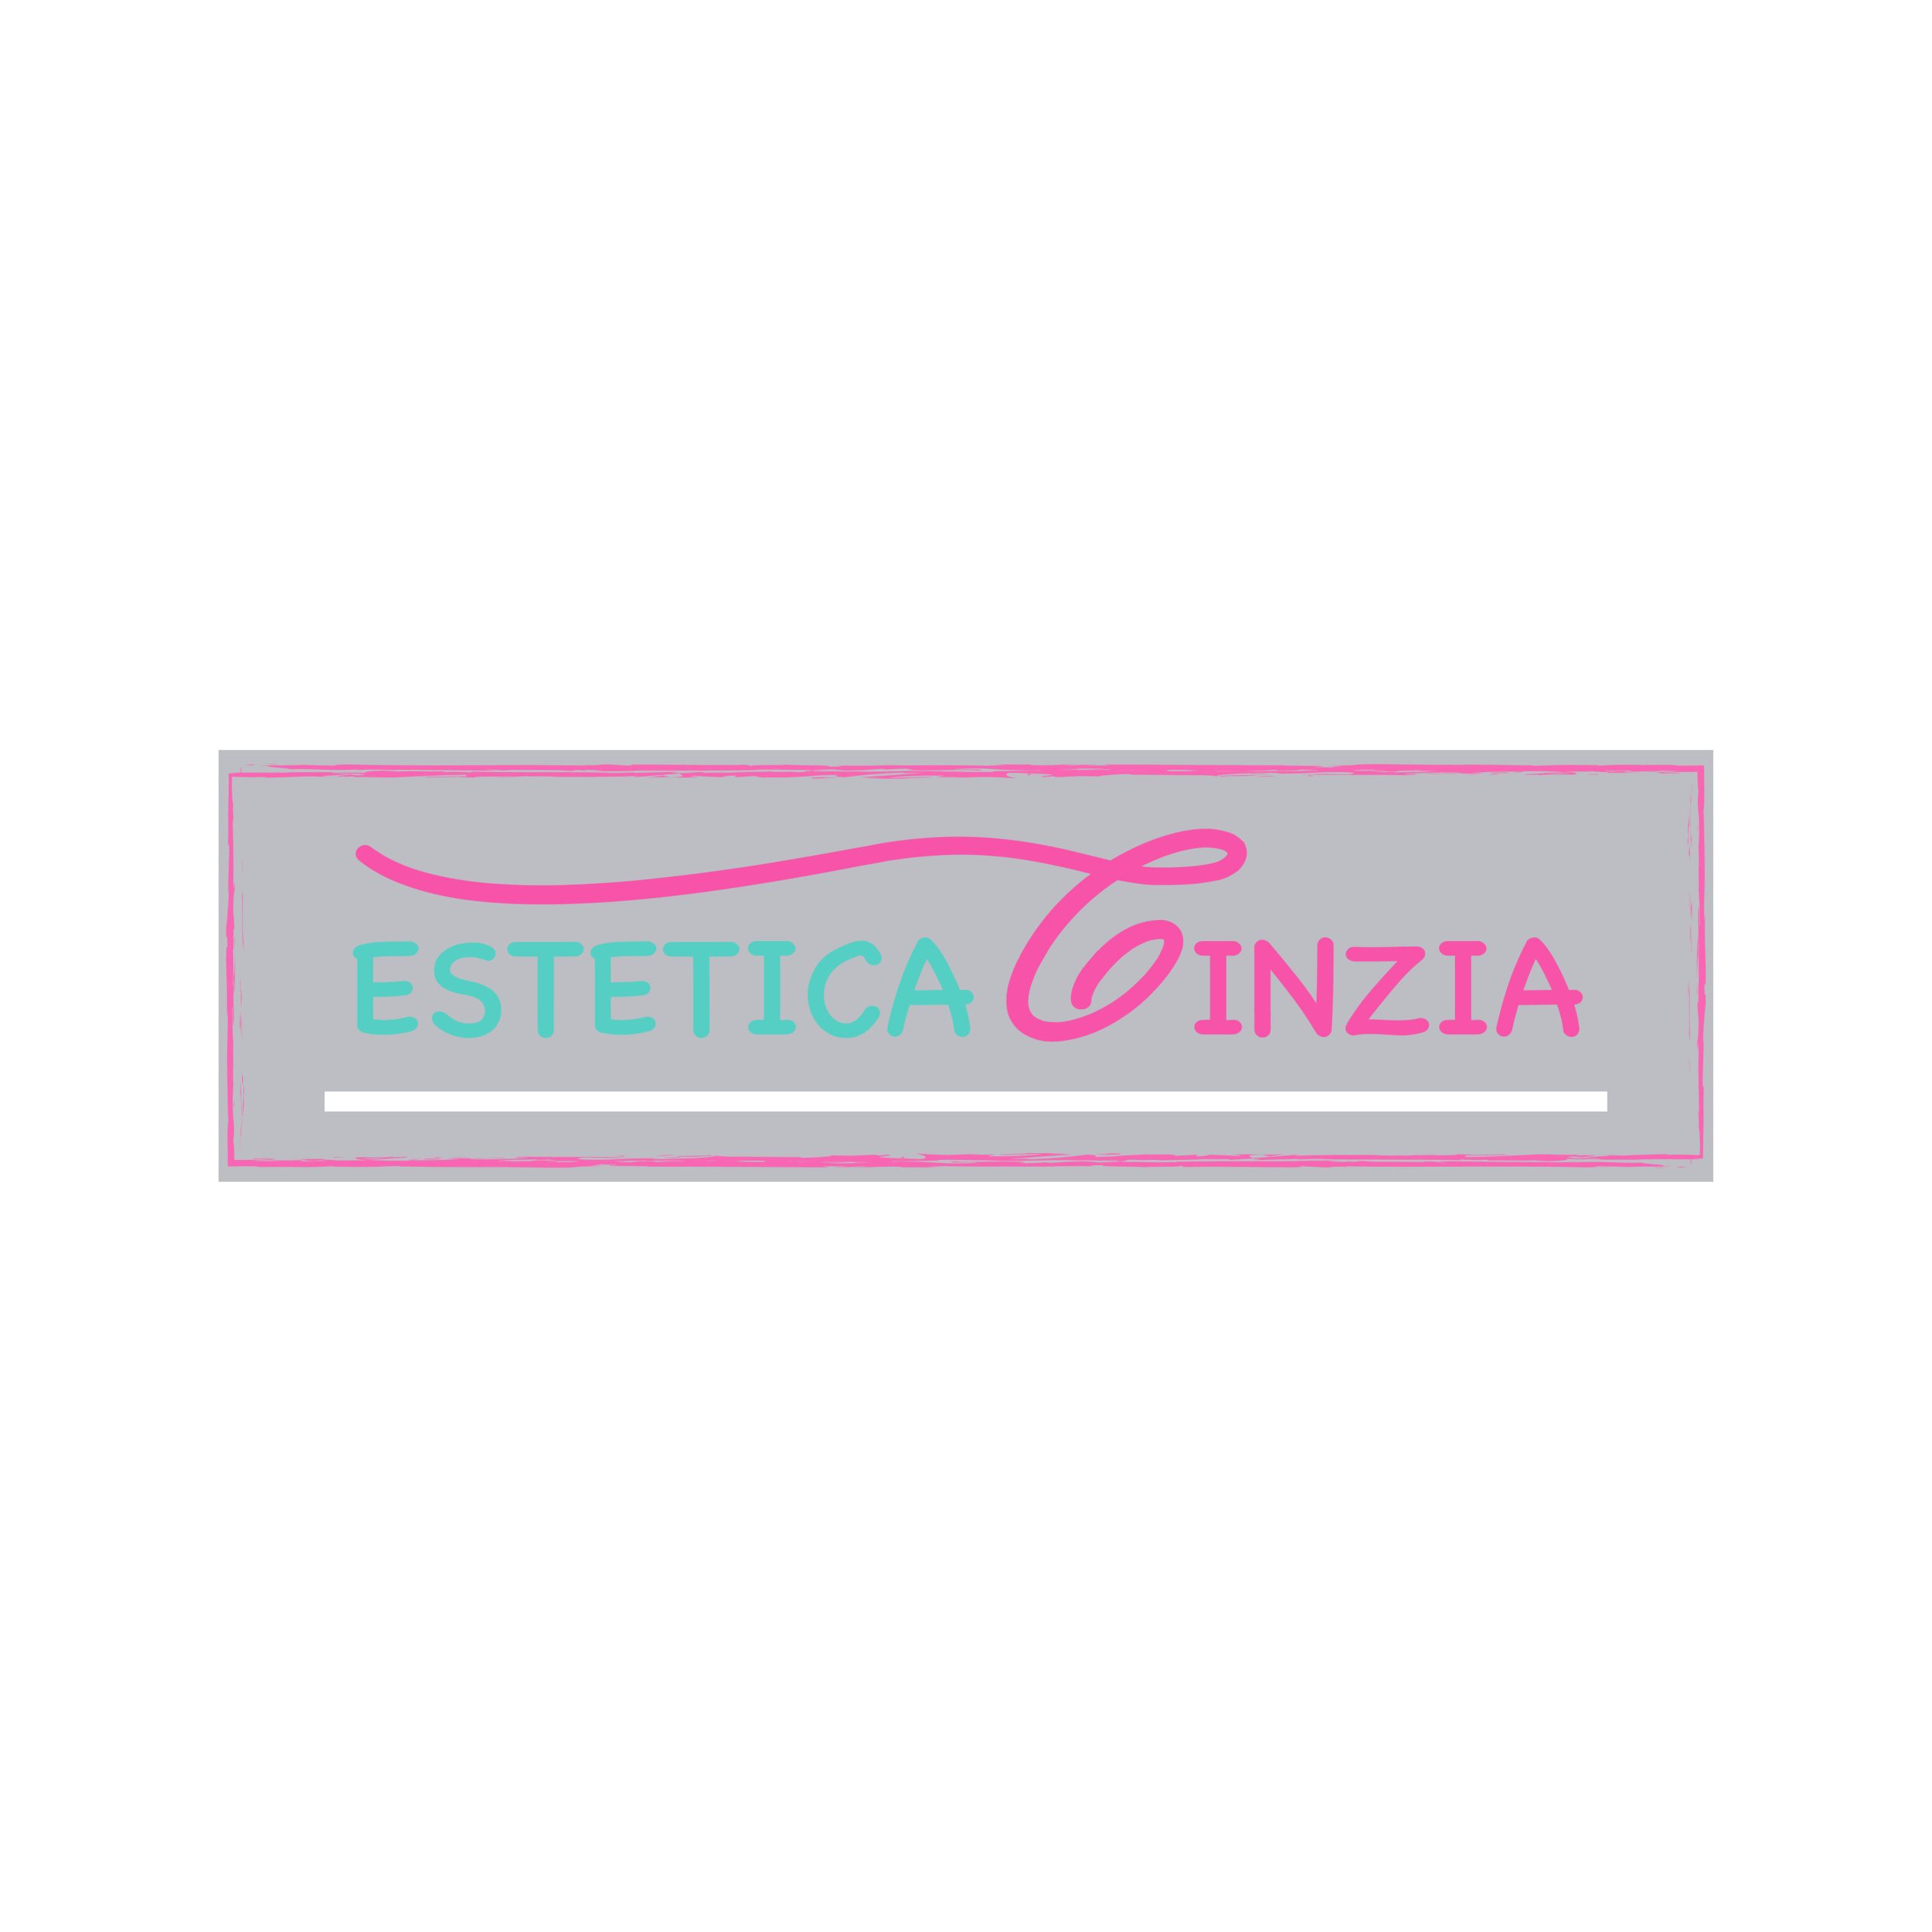 Estetica Cinzia - logo1000x1000